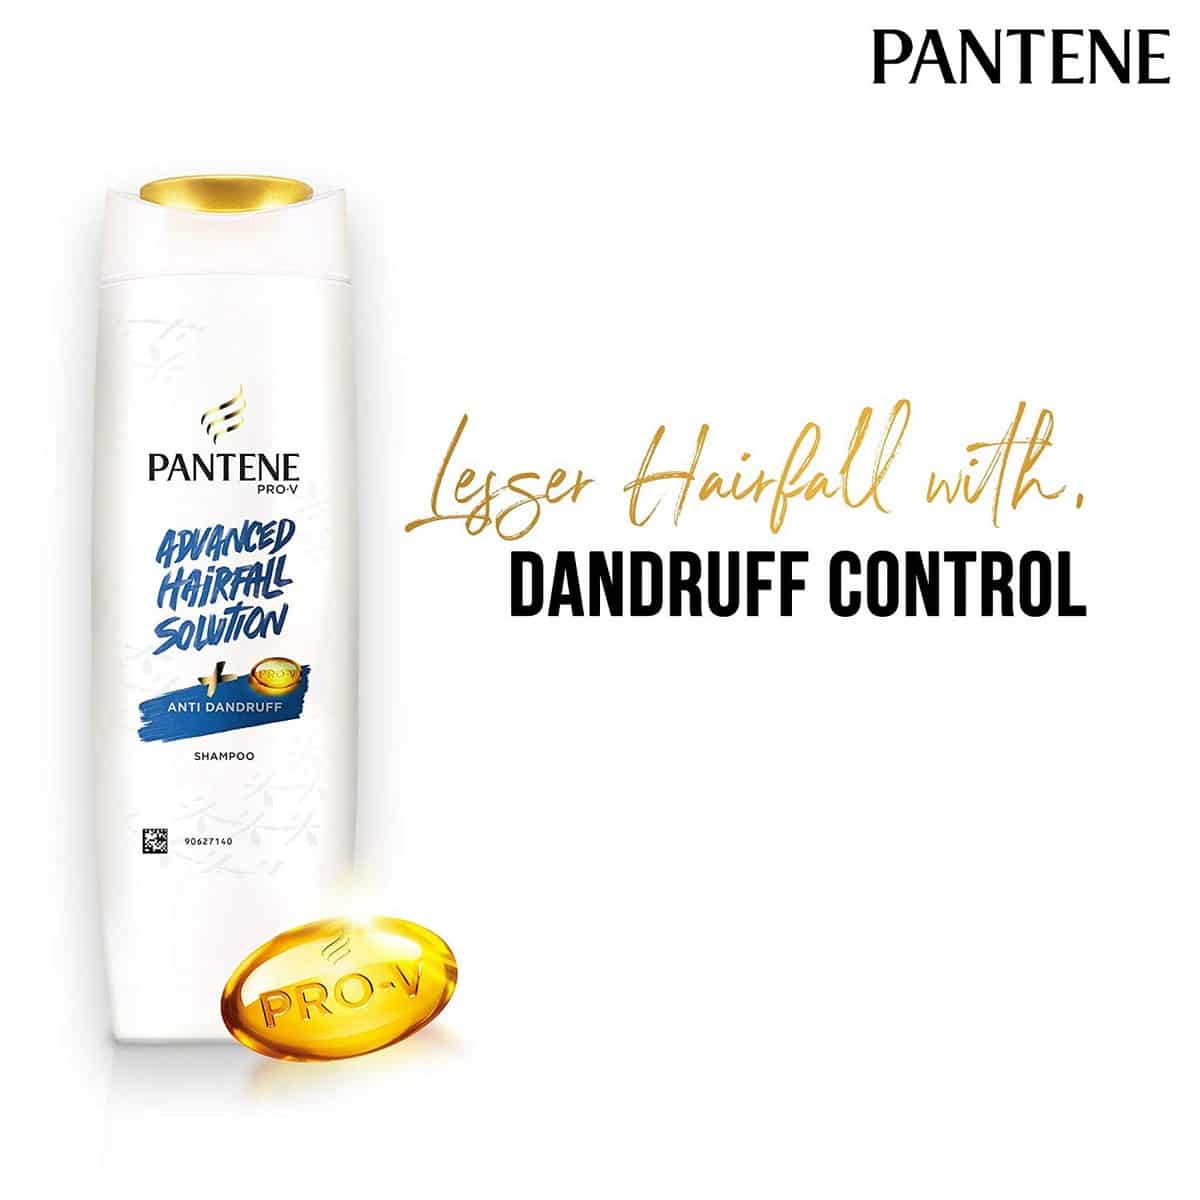 Pantene Advanced Hair Fall Solution Anti-Dandruff Shampoo (180 ml) -  RichesM Healthcare